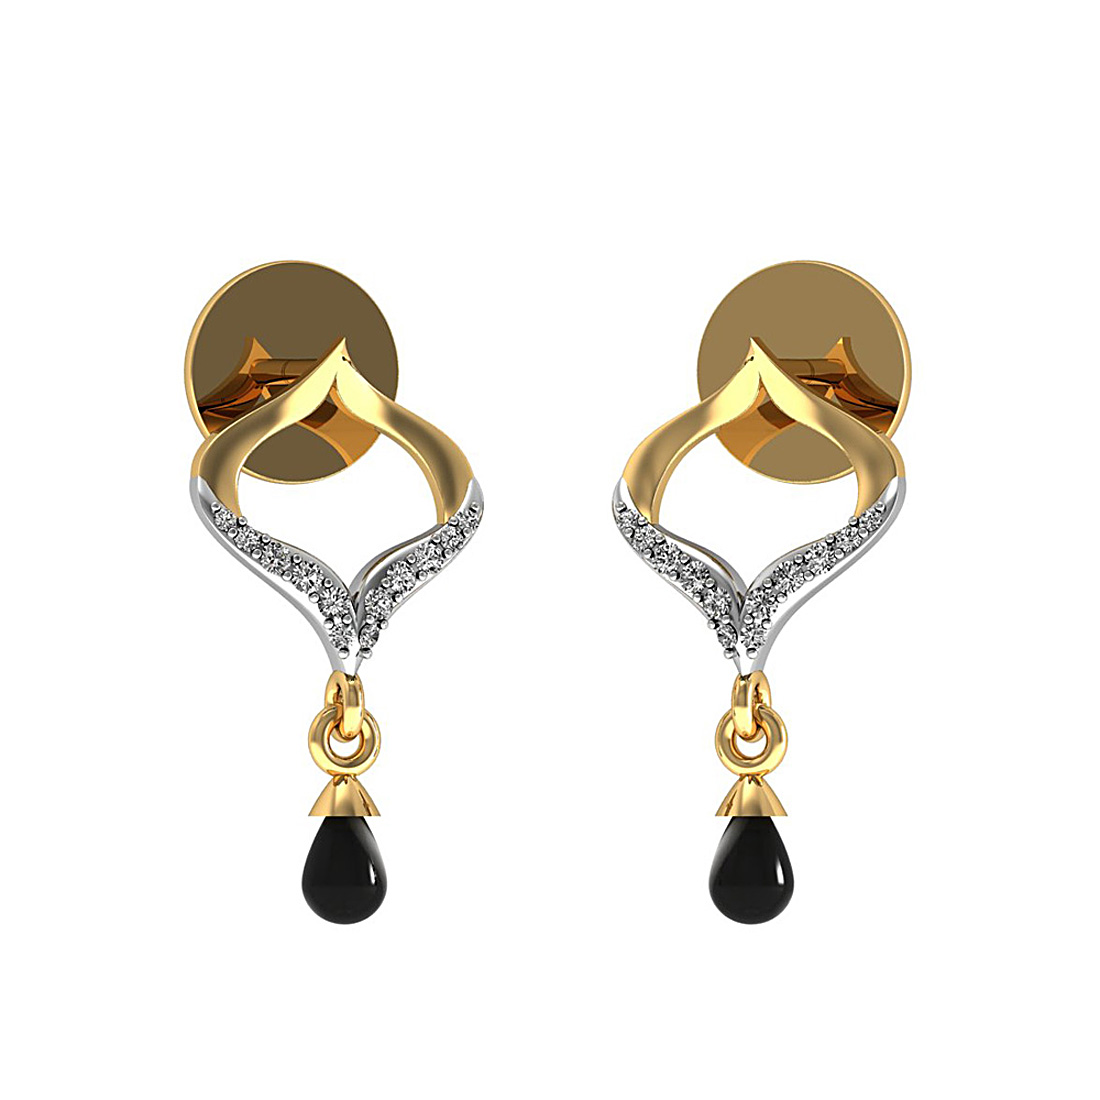 Diamond & onyx drop stud earrings made in 18k gold